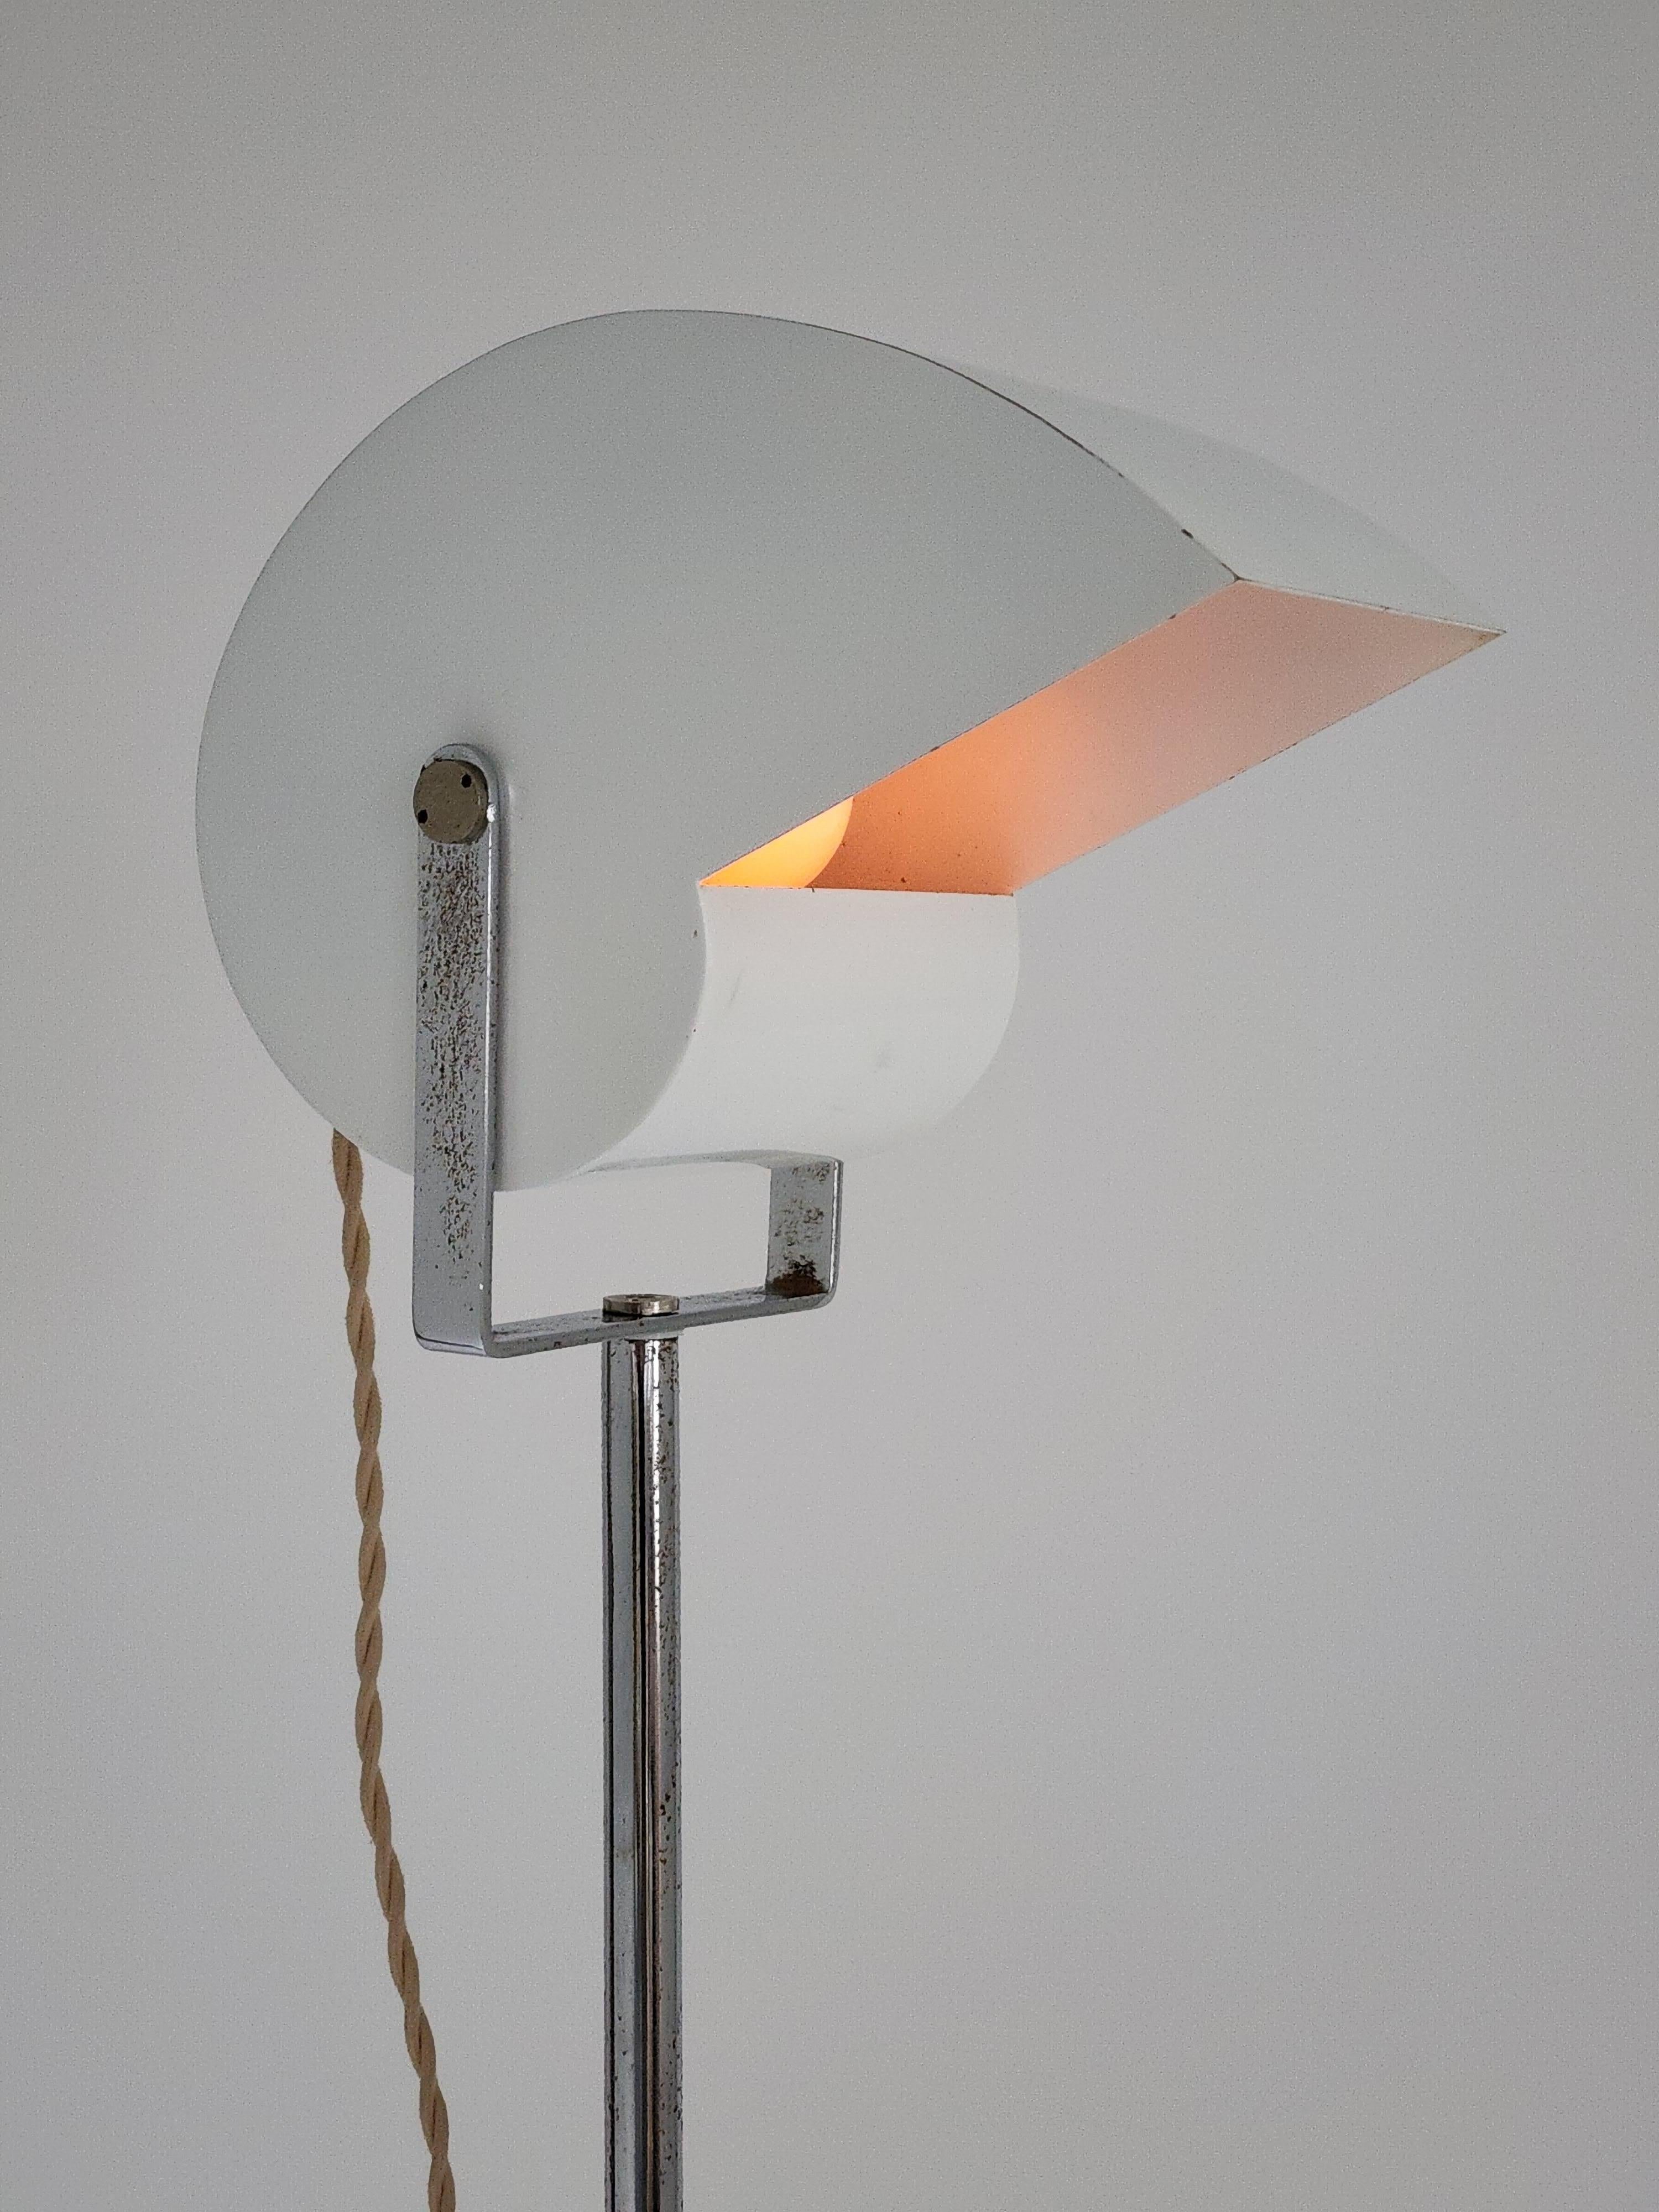 Rare lampadaire 'Snail' de l'architecte Giuseppe Raimondi pour le Studio Luce, Italie. 

L'abat-jour émaillé pivote sur 360 degrés à l'horizontale et sur 180 degrés de haut en bas.  

Construction robuste et bien faite. 

La lampe est réglable en